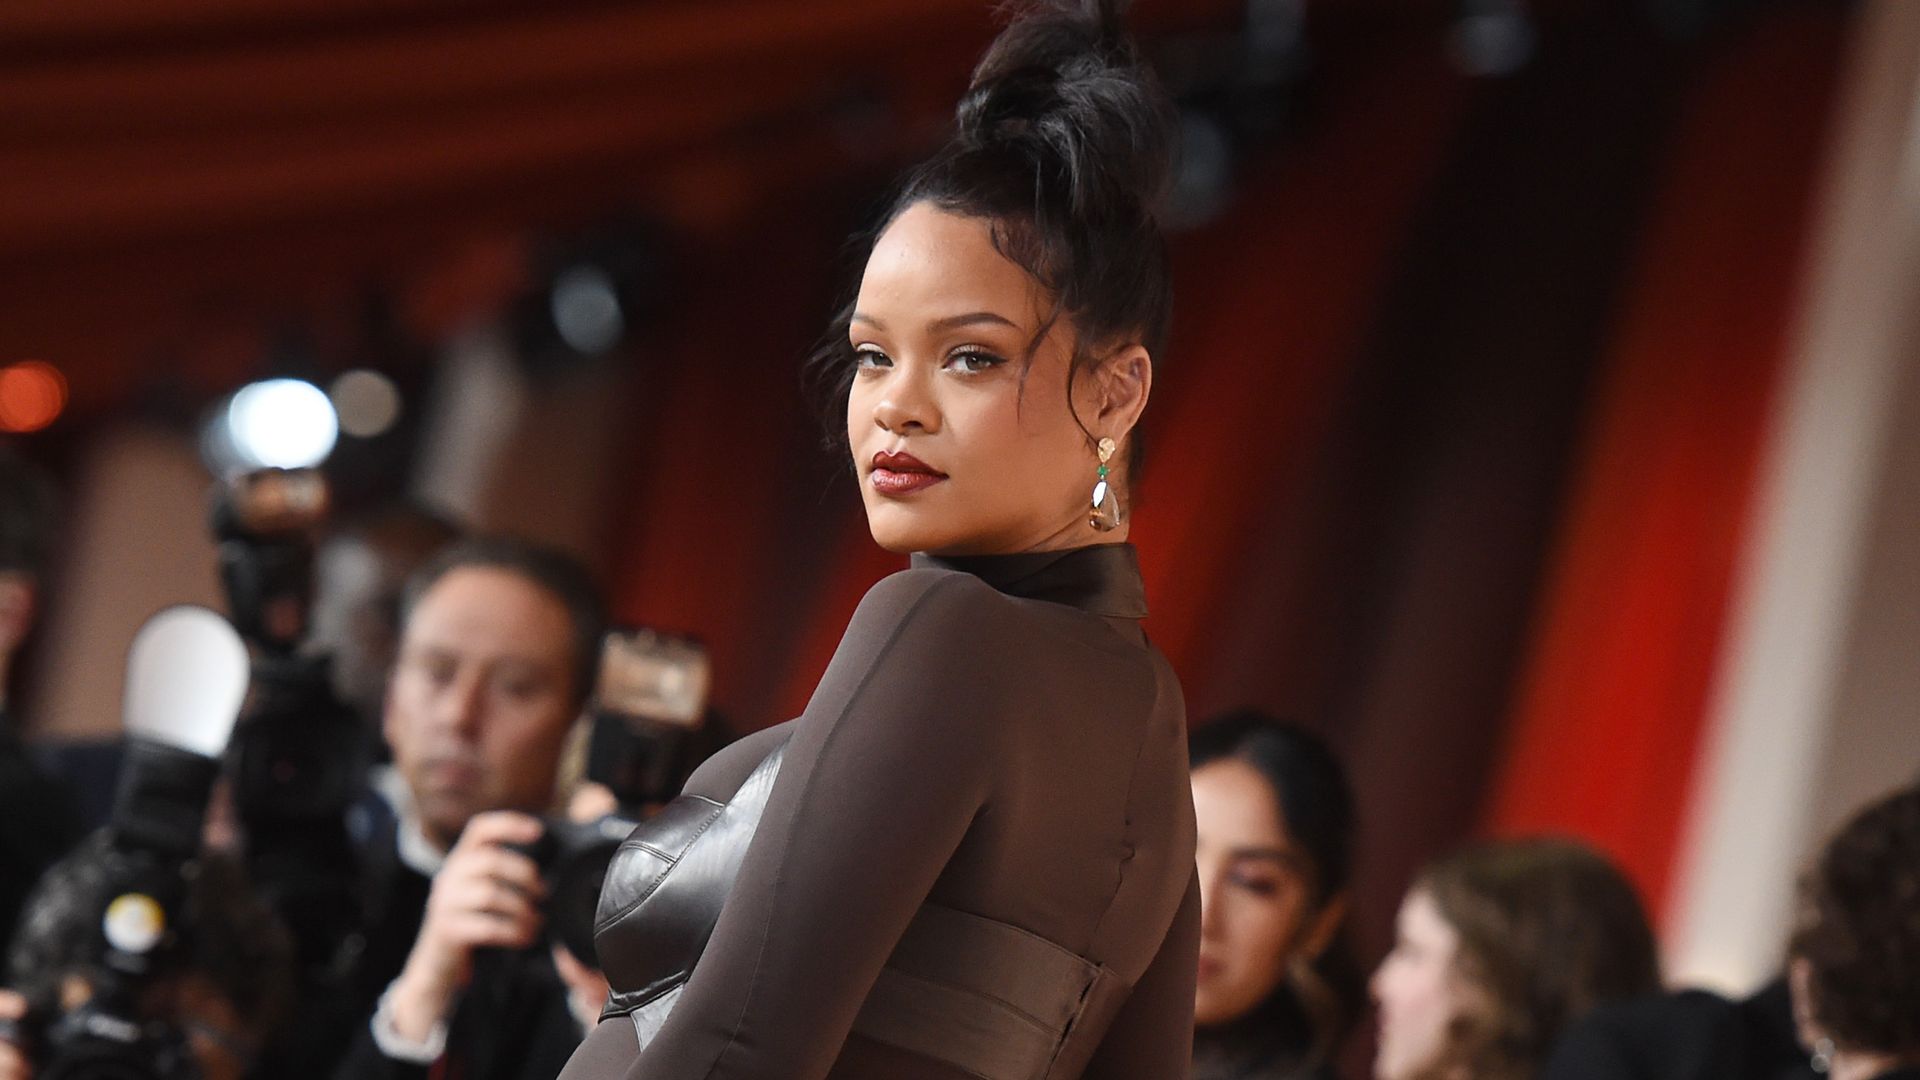 Rihanna at the 95th Annual Academy Awards